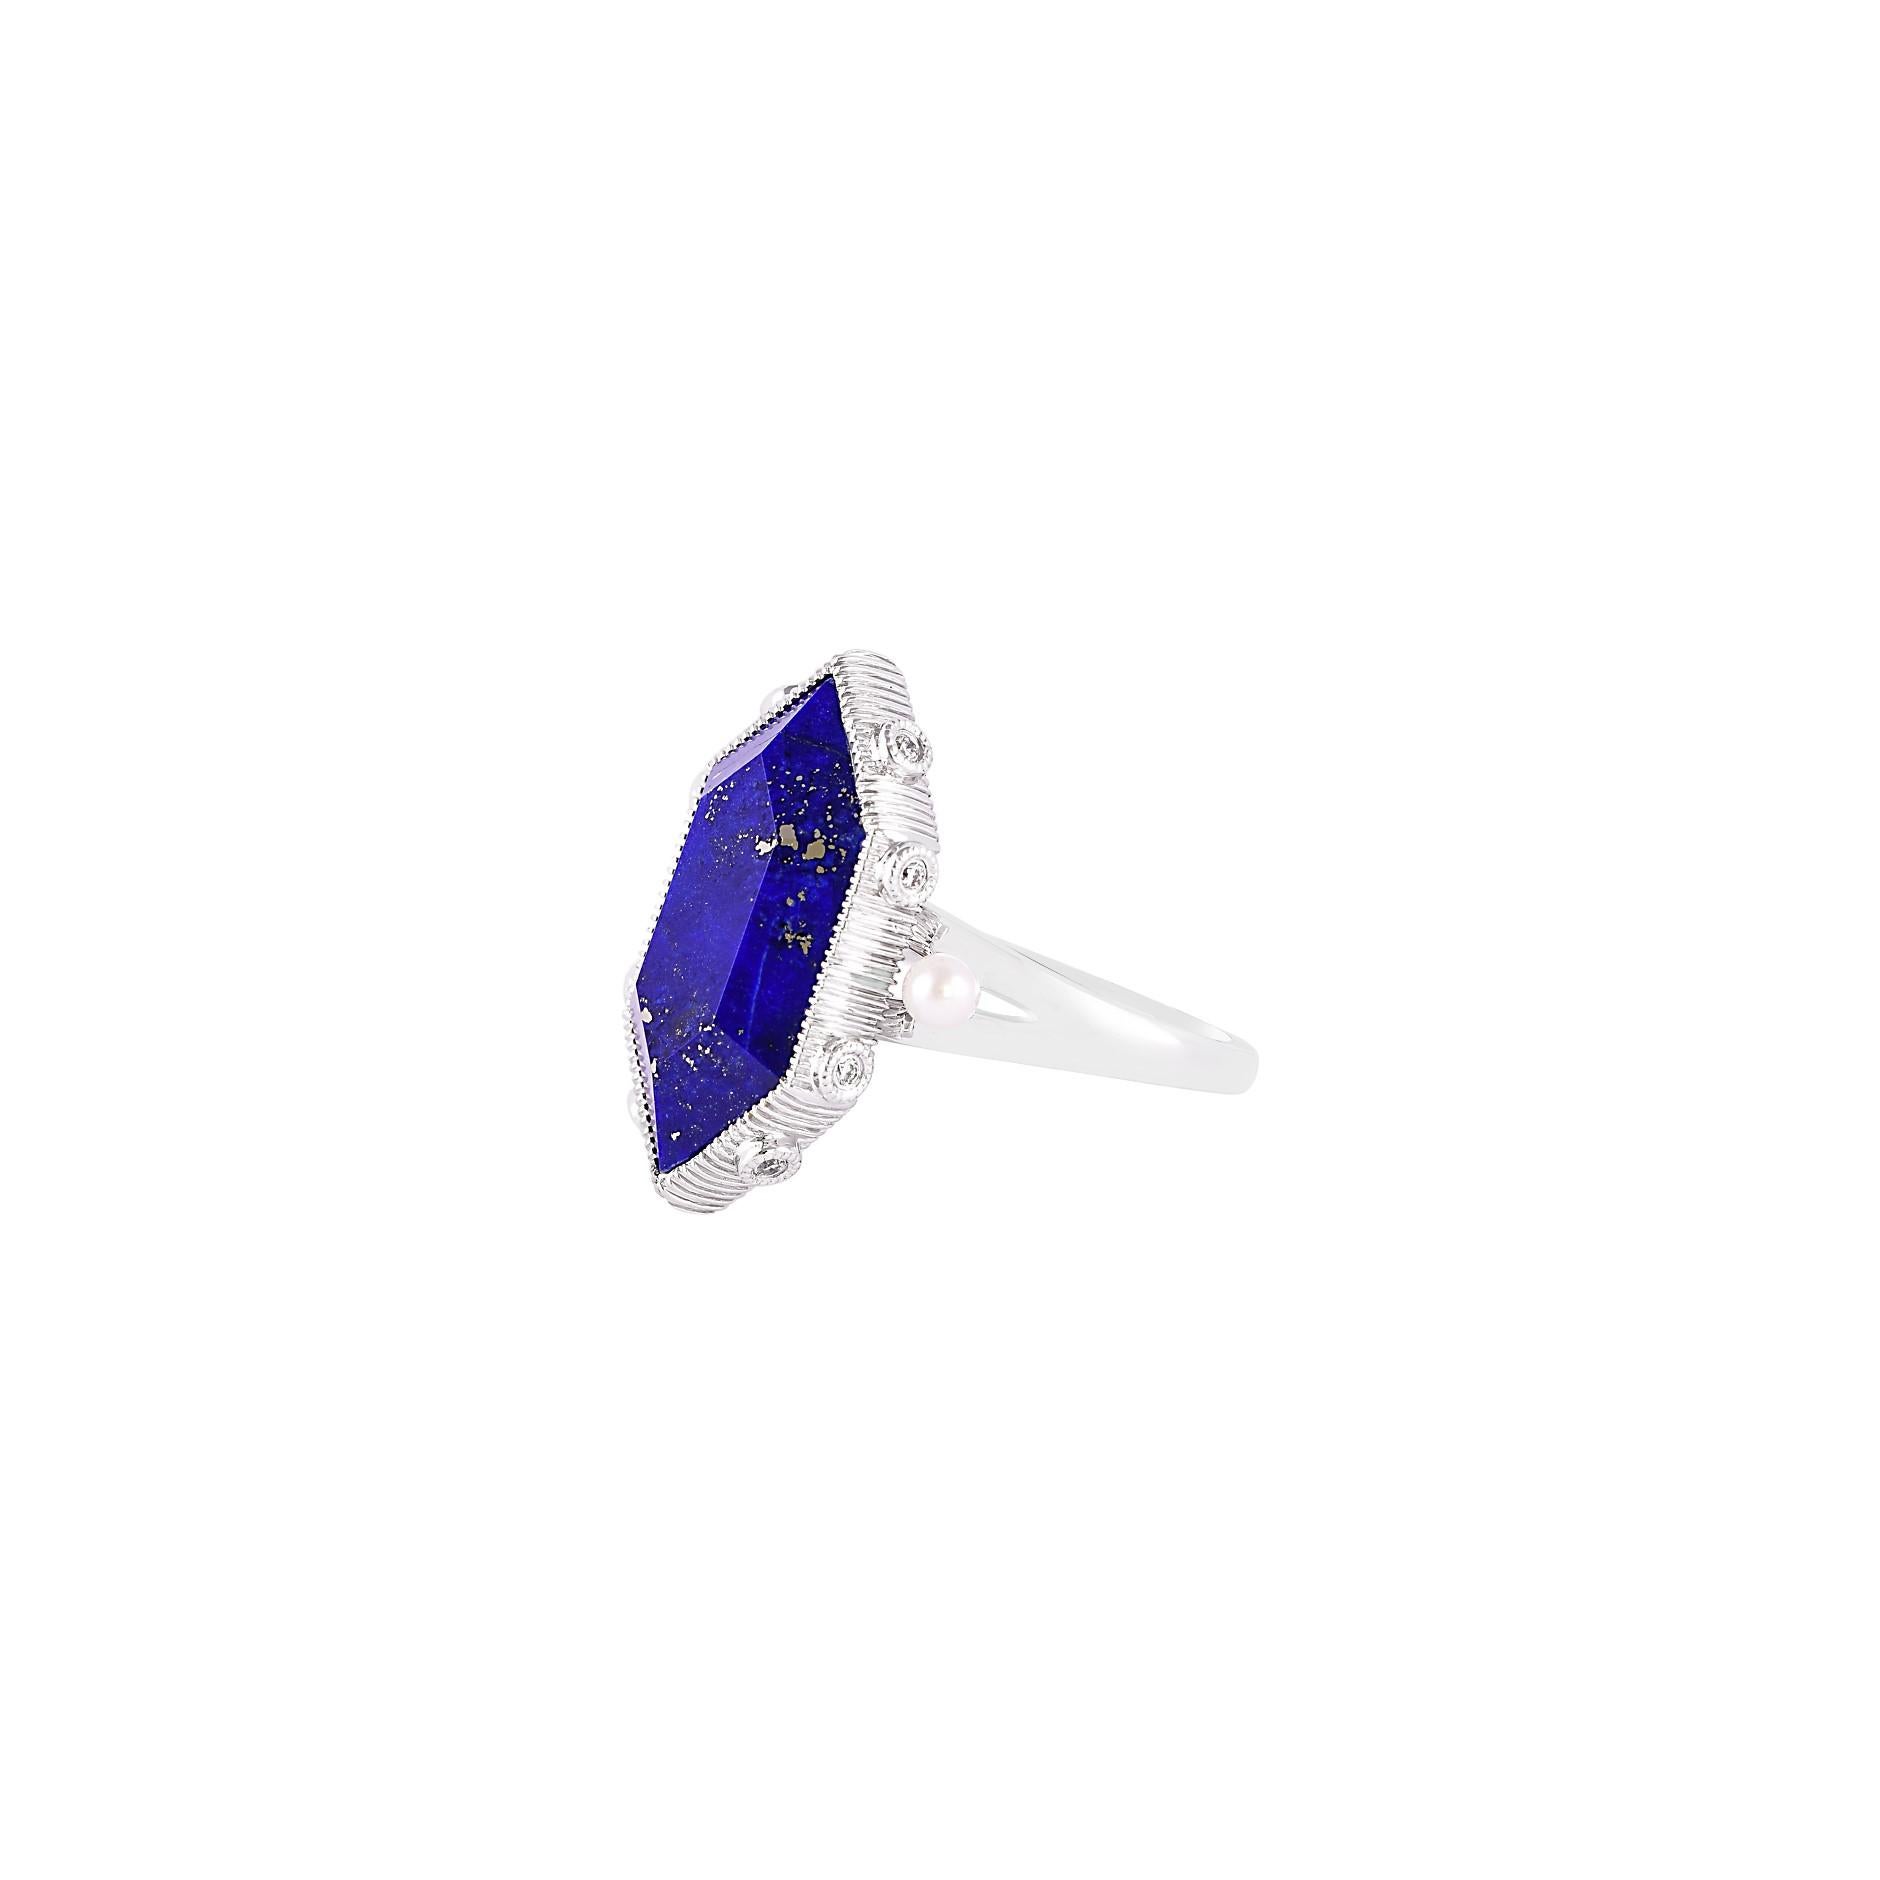 8.82 Carat Lapis Lazuli Ring in 18 Karat White Gold with Diamonds and ...